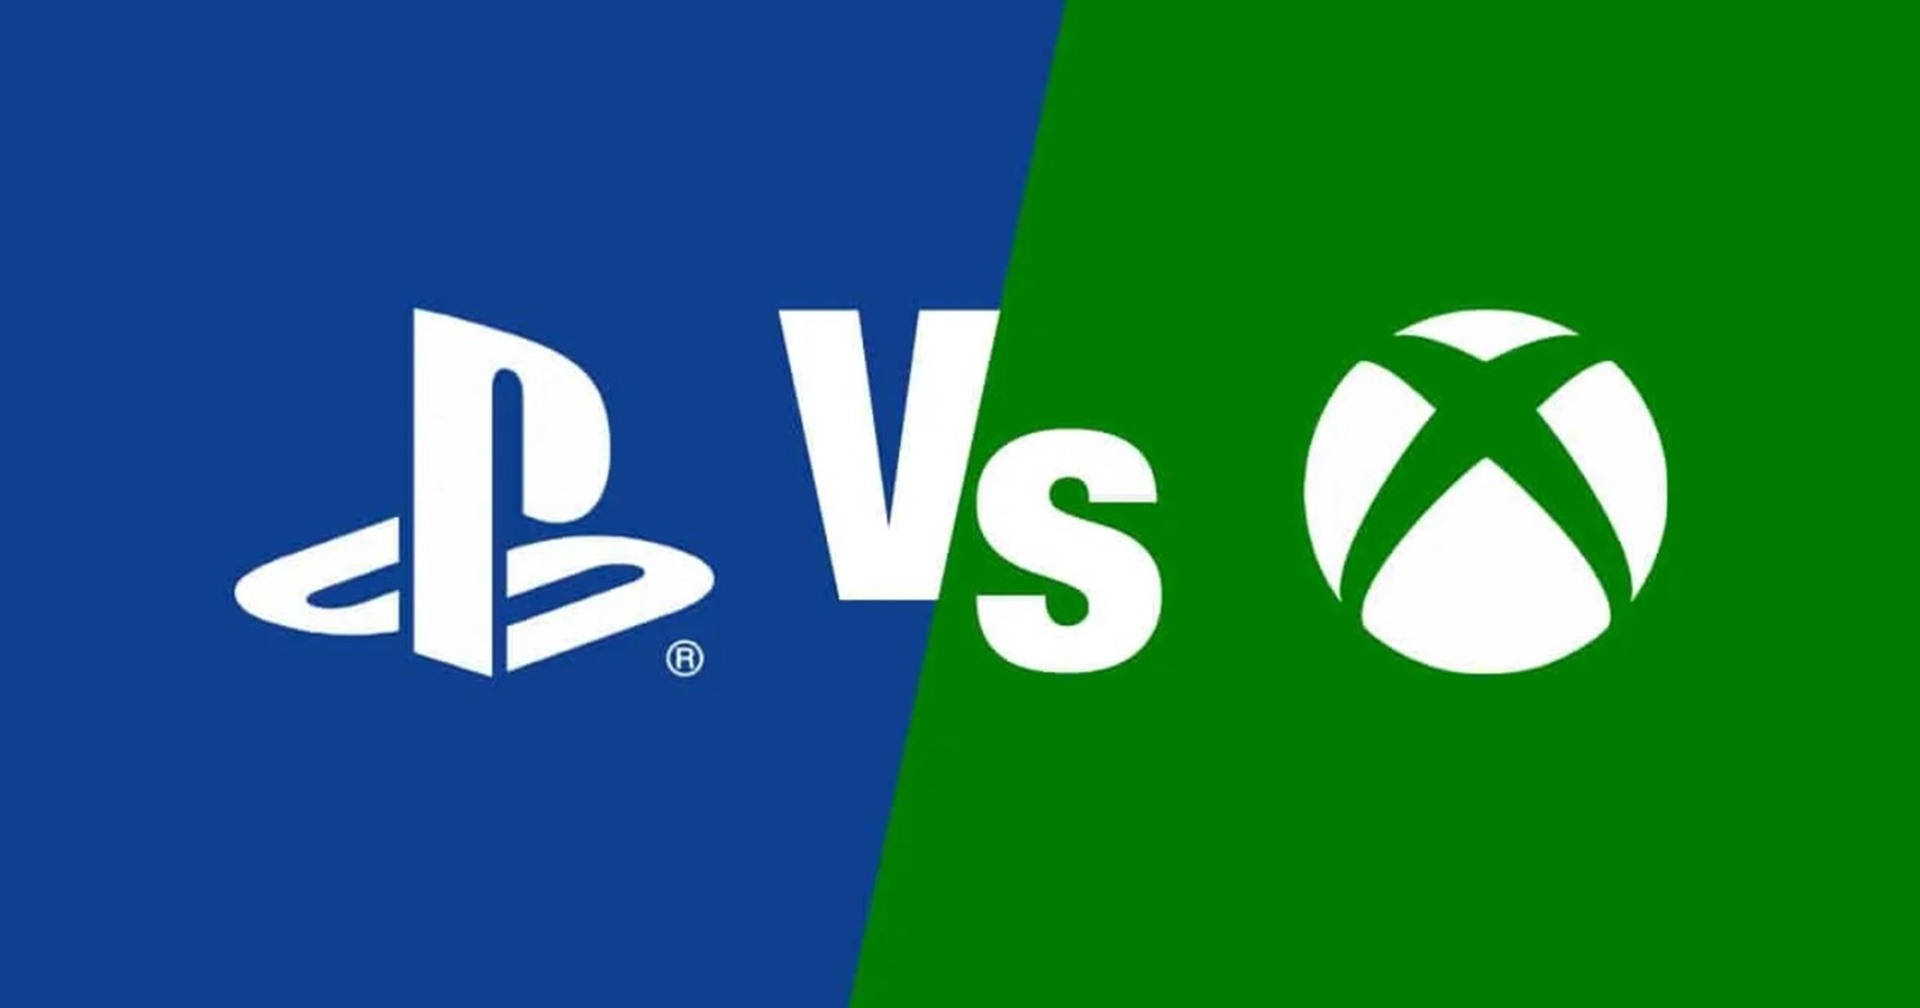 สมาชิกสภาคองเกรส กล่าวหา Sony ทำการตลาดอย่างไม่เป็นธรรมกับ Xbox ในญี่ปุ่น